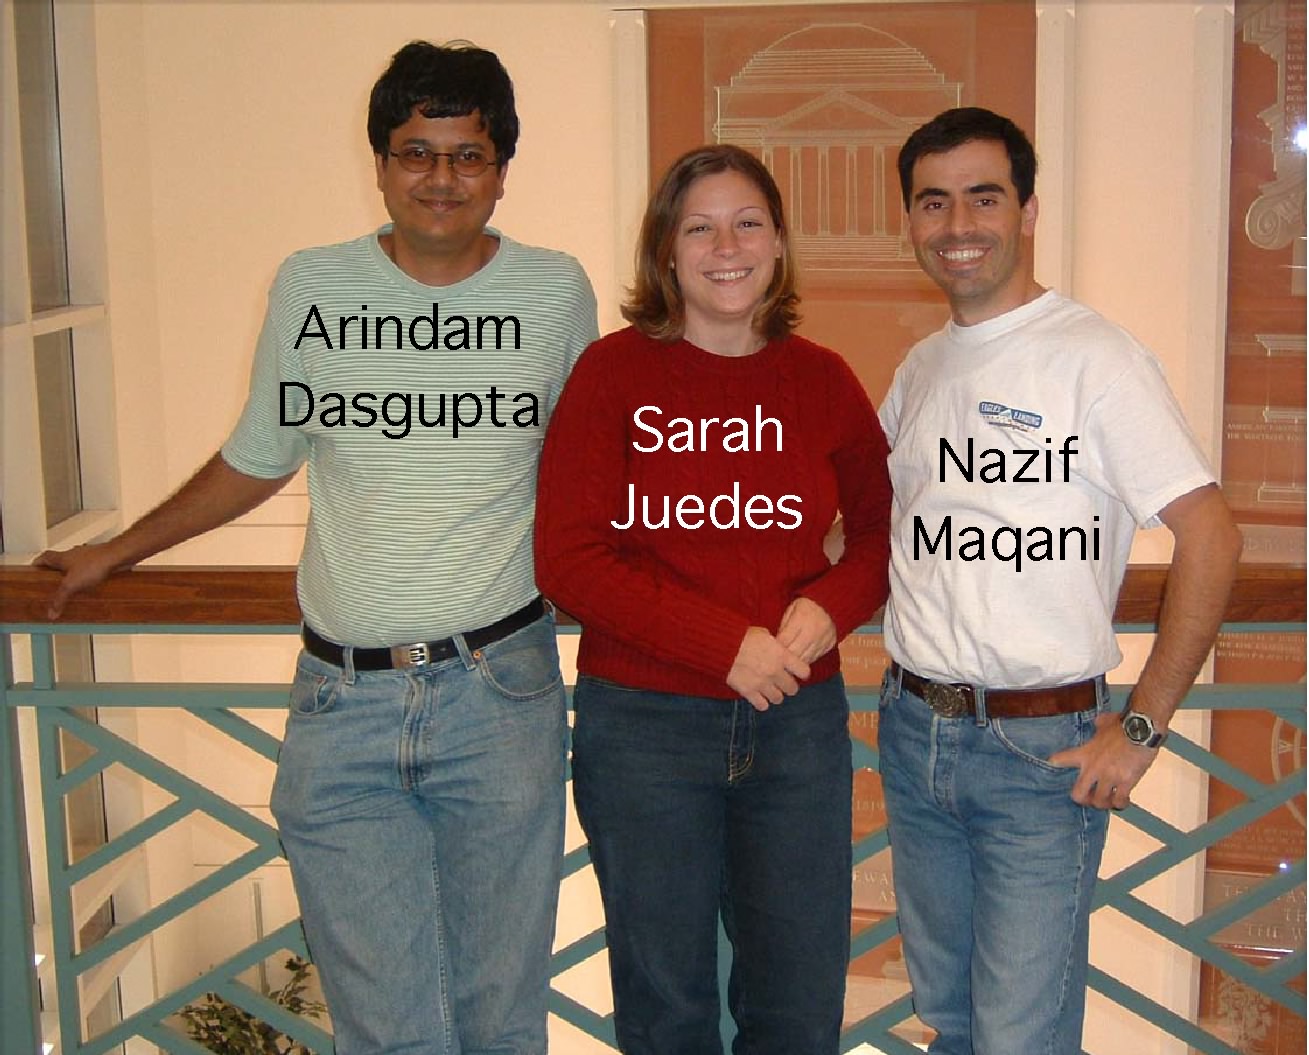 Arindam, Sarah and Nazif